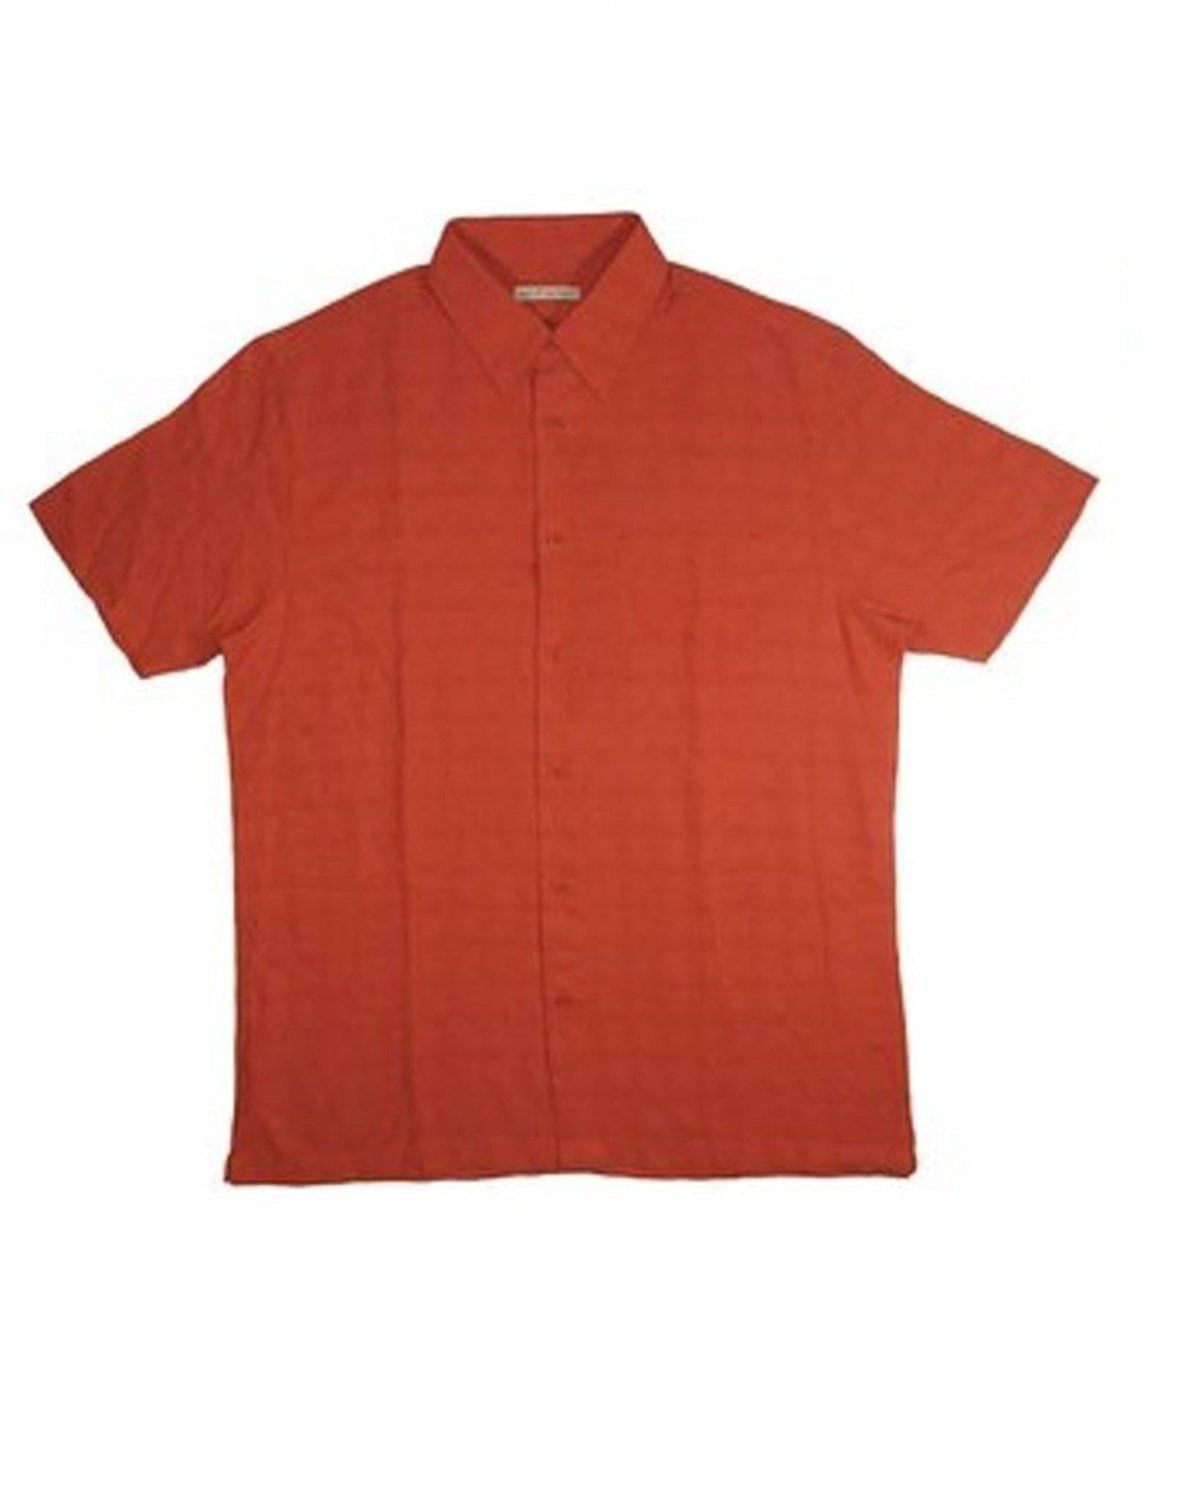 Quiksilver Boys Polo Shirt Medium 4001 